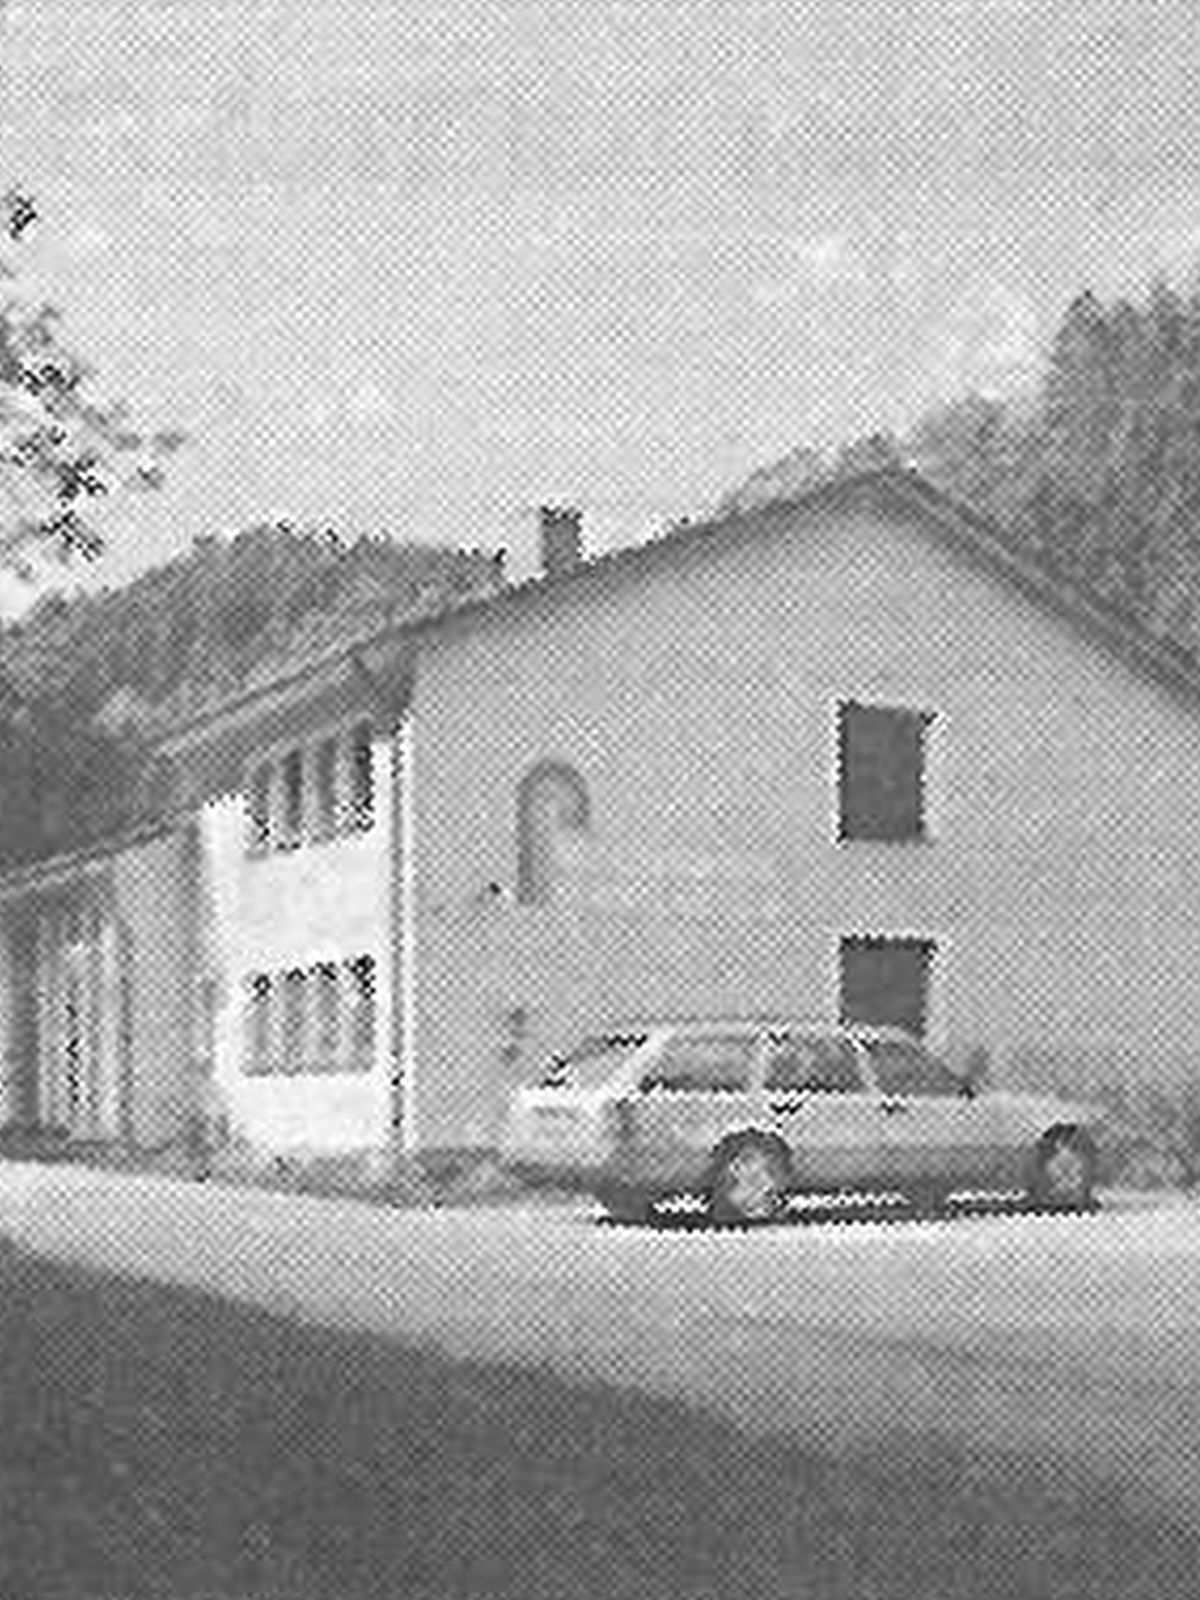  Schopflocher Skizzen Bild vom Gebäude aus der Info-Broschüre des Zweckverbandes Wasserversorgung Haugenstein - Bild wird mit einem klick vergrößert 